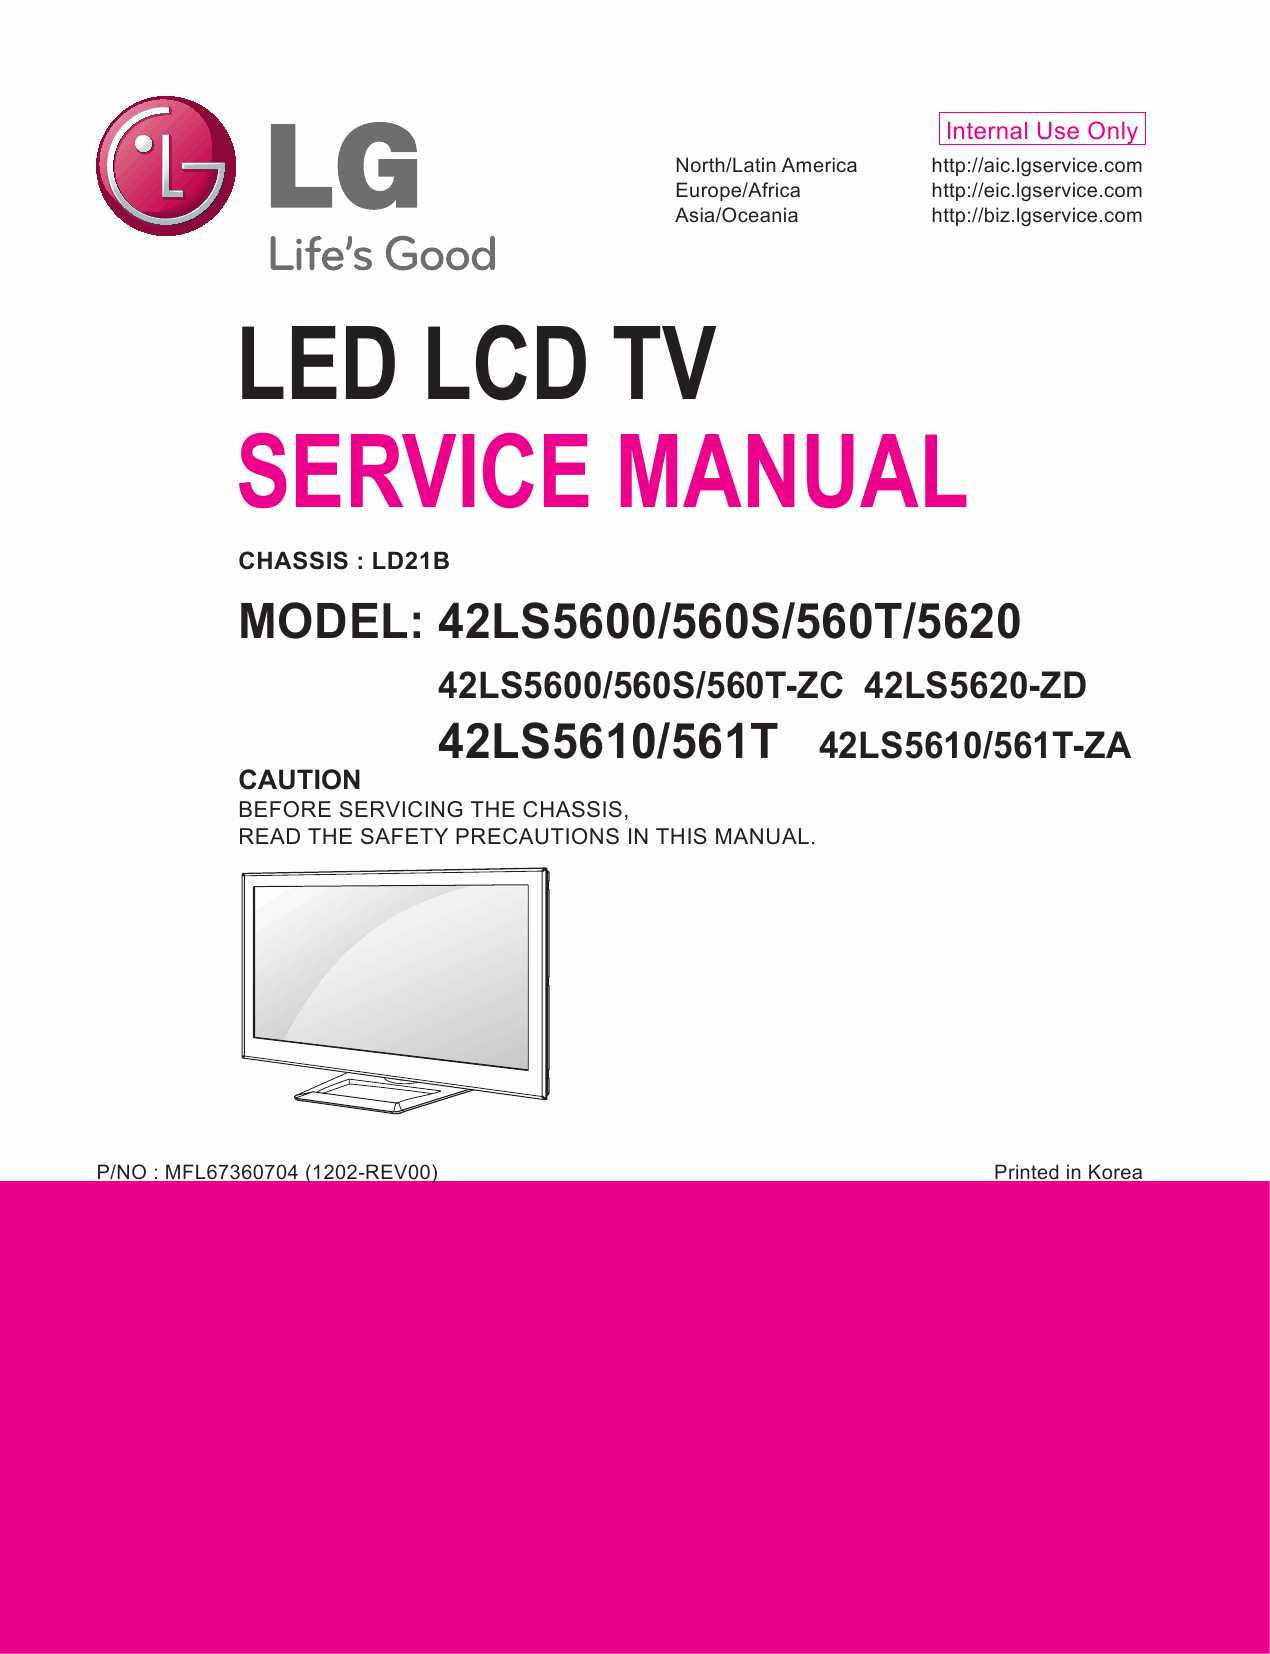 LG_LED_TV_42LS5600_560S_560T_5620_5610_561T_Service_Manual_2012_Qmanual.com-1